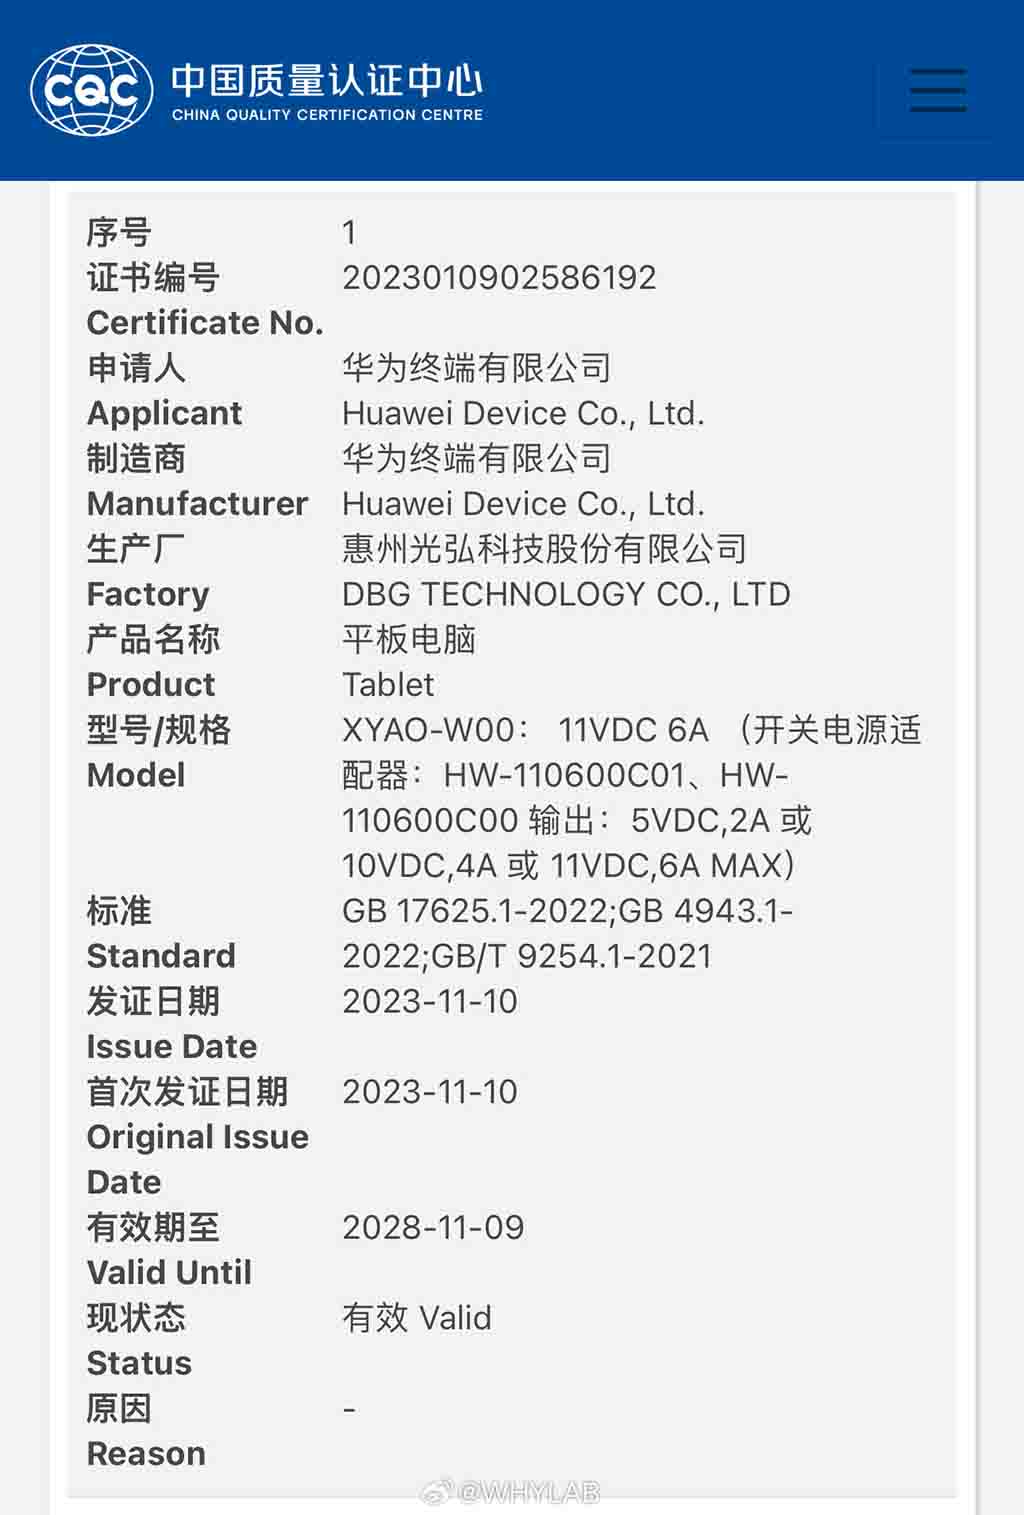 Huawei XYAO-W00